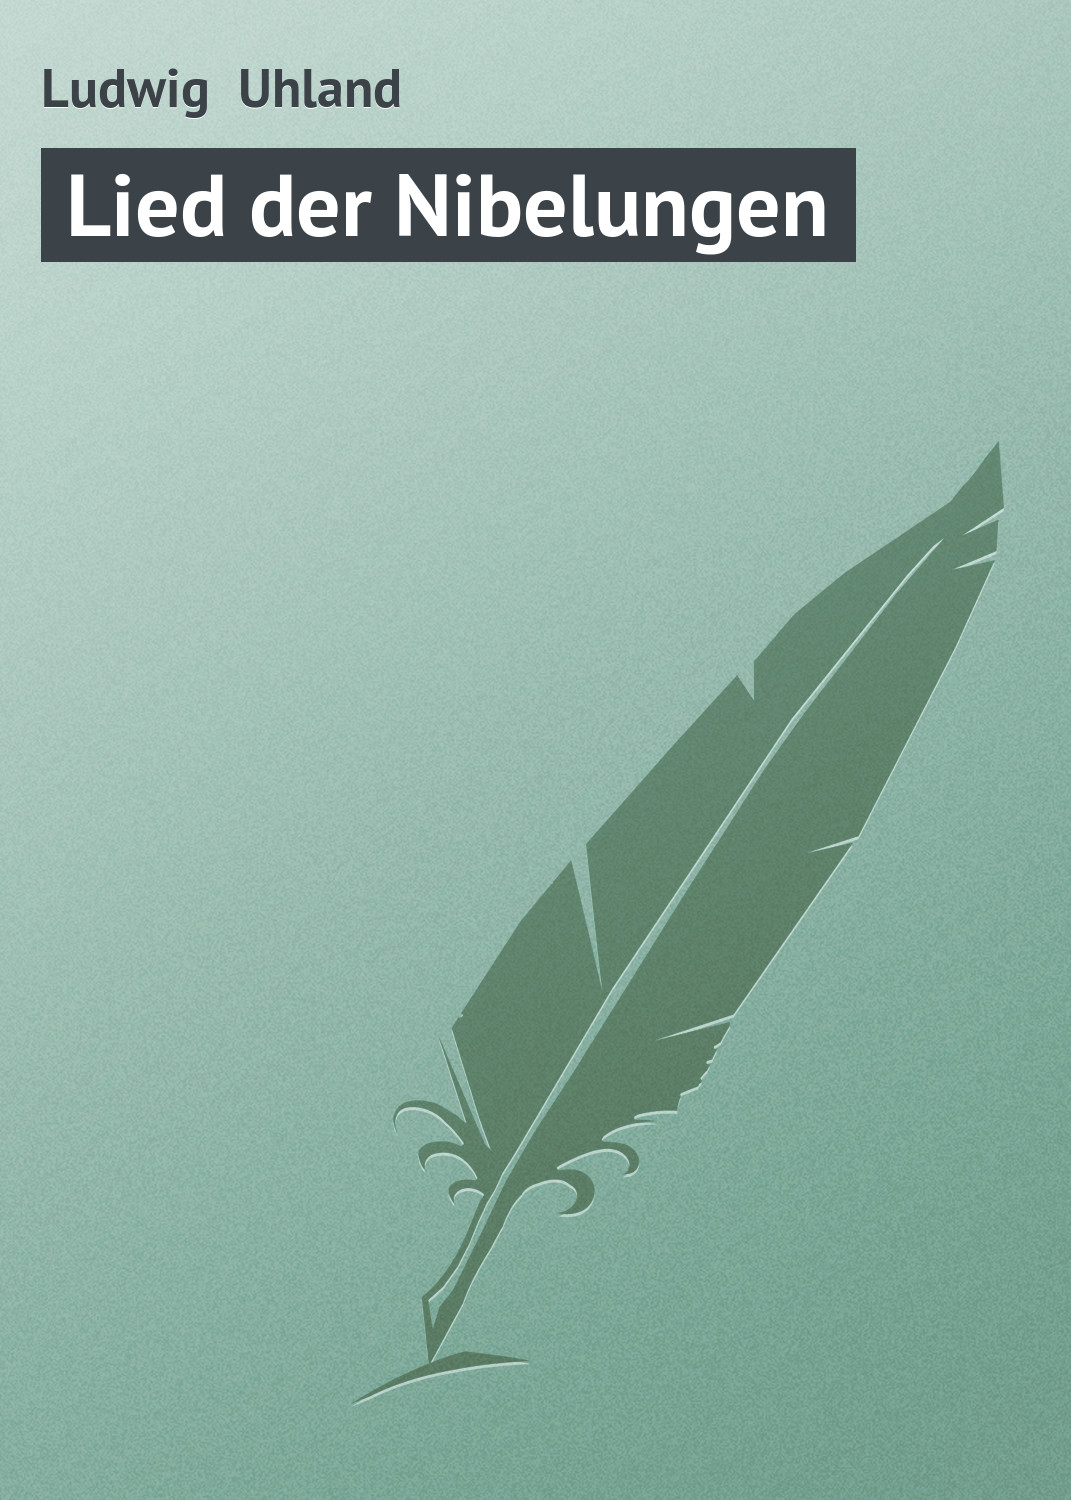 Книга Lied der Nibelungen из серии , созданная Ludwig Uhland, может относится к жанру Зарубежная старинная литература, Зарубежная классика. Стоимость электронной книги Lied der Nibelungen с идентификатором 21107182 составляет 5.99 руб.